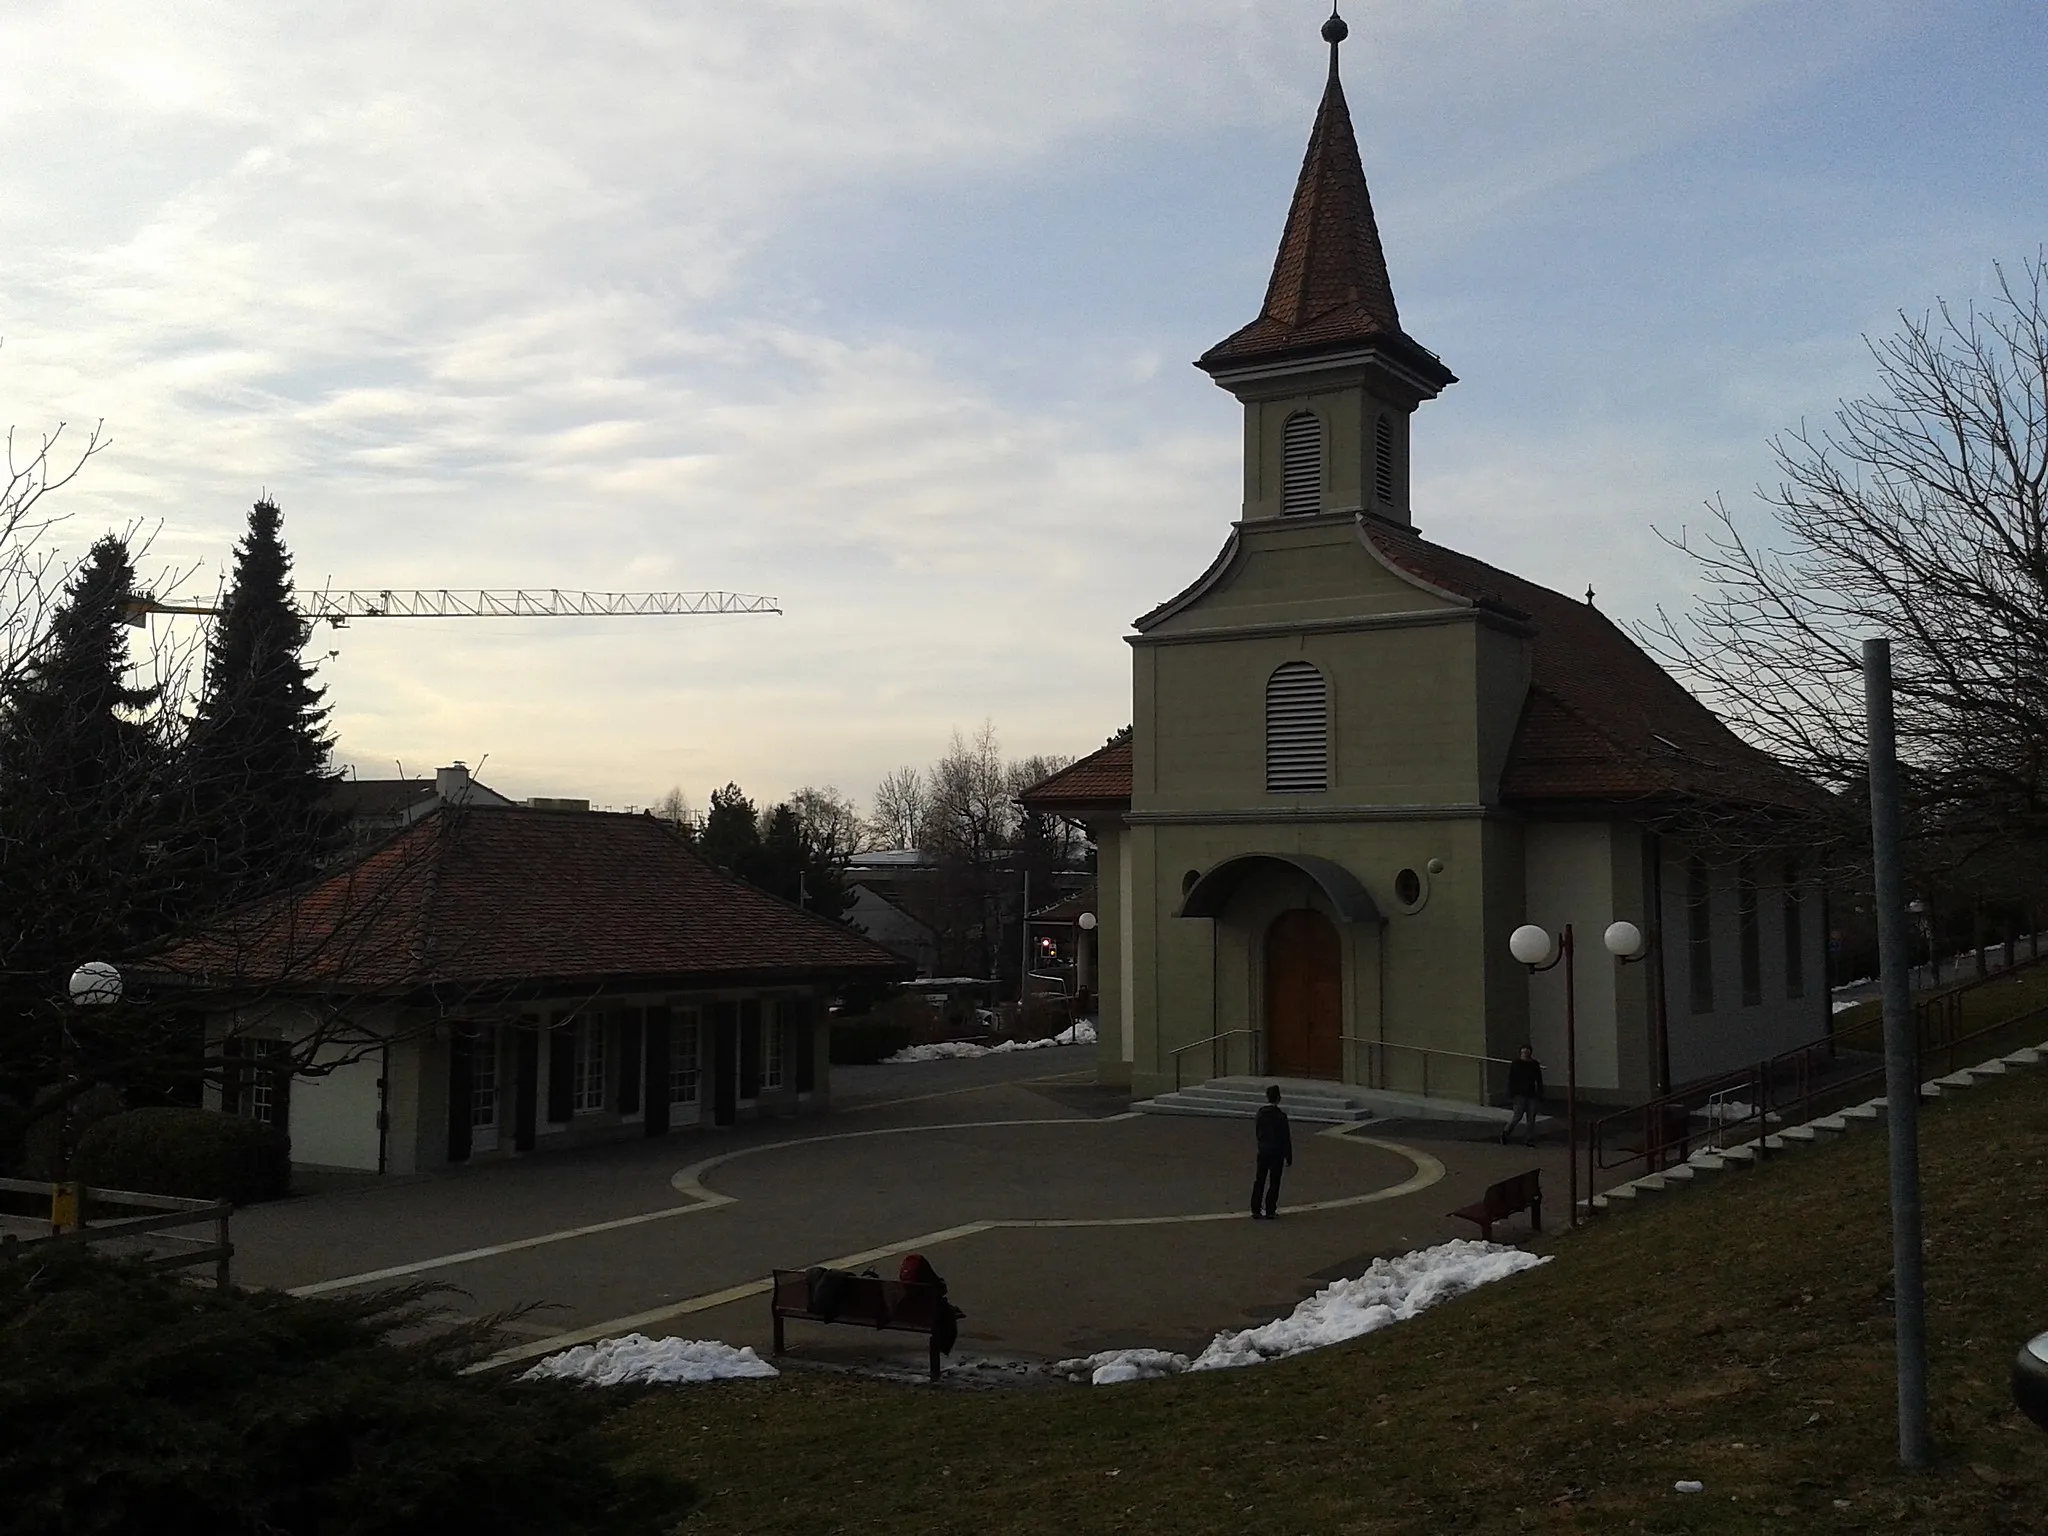 Photo showing: The temple of Le Mont-sur-Lausanne, Vaud, Switzerland.